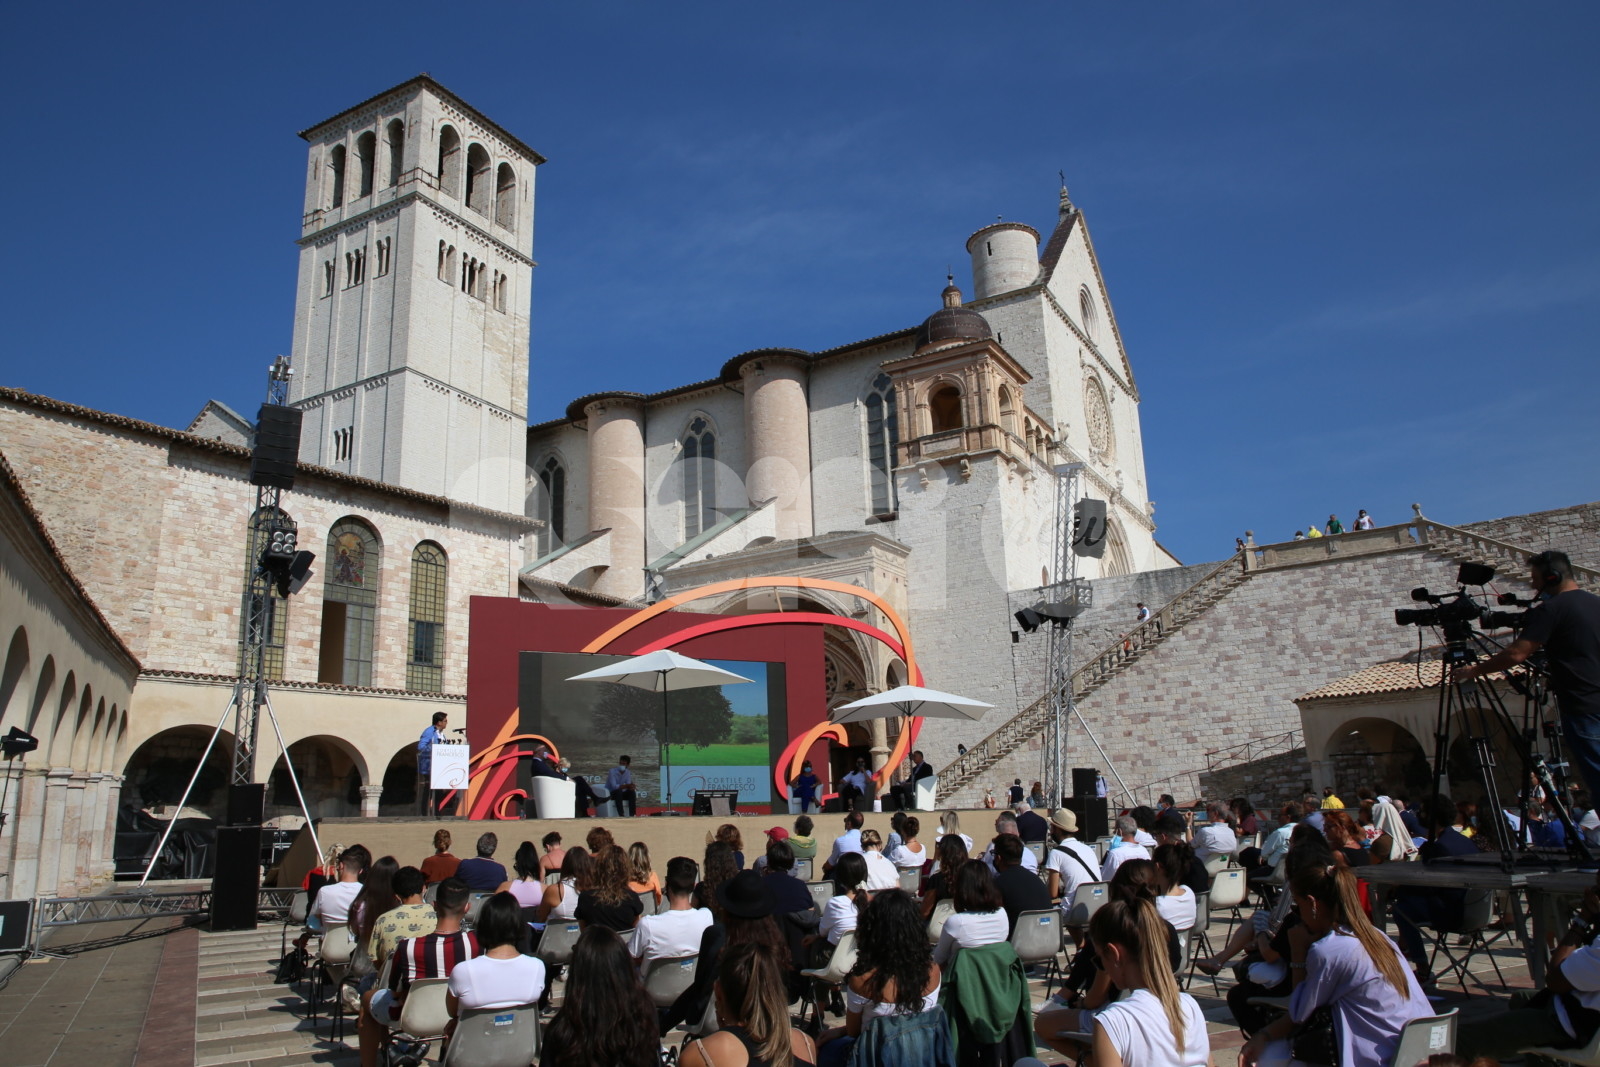 Cortile di Francesco 2022, ad Assisi due giorni di incontri sul tema “Eterno e il tempo presente”